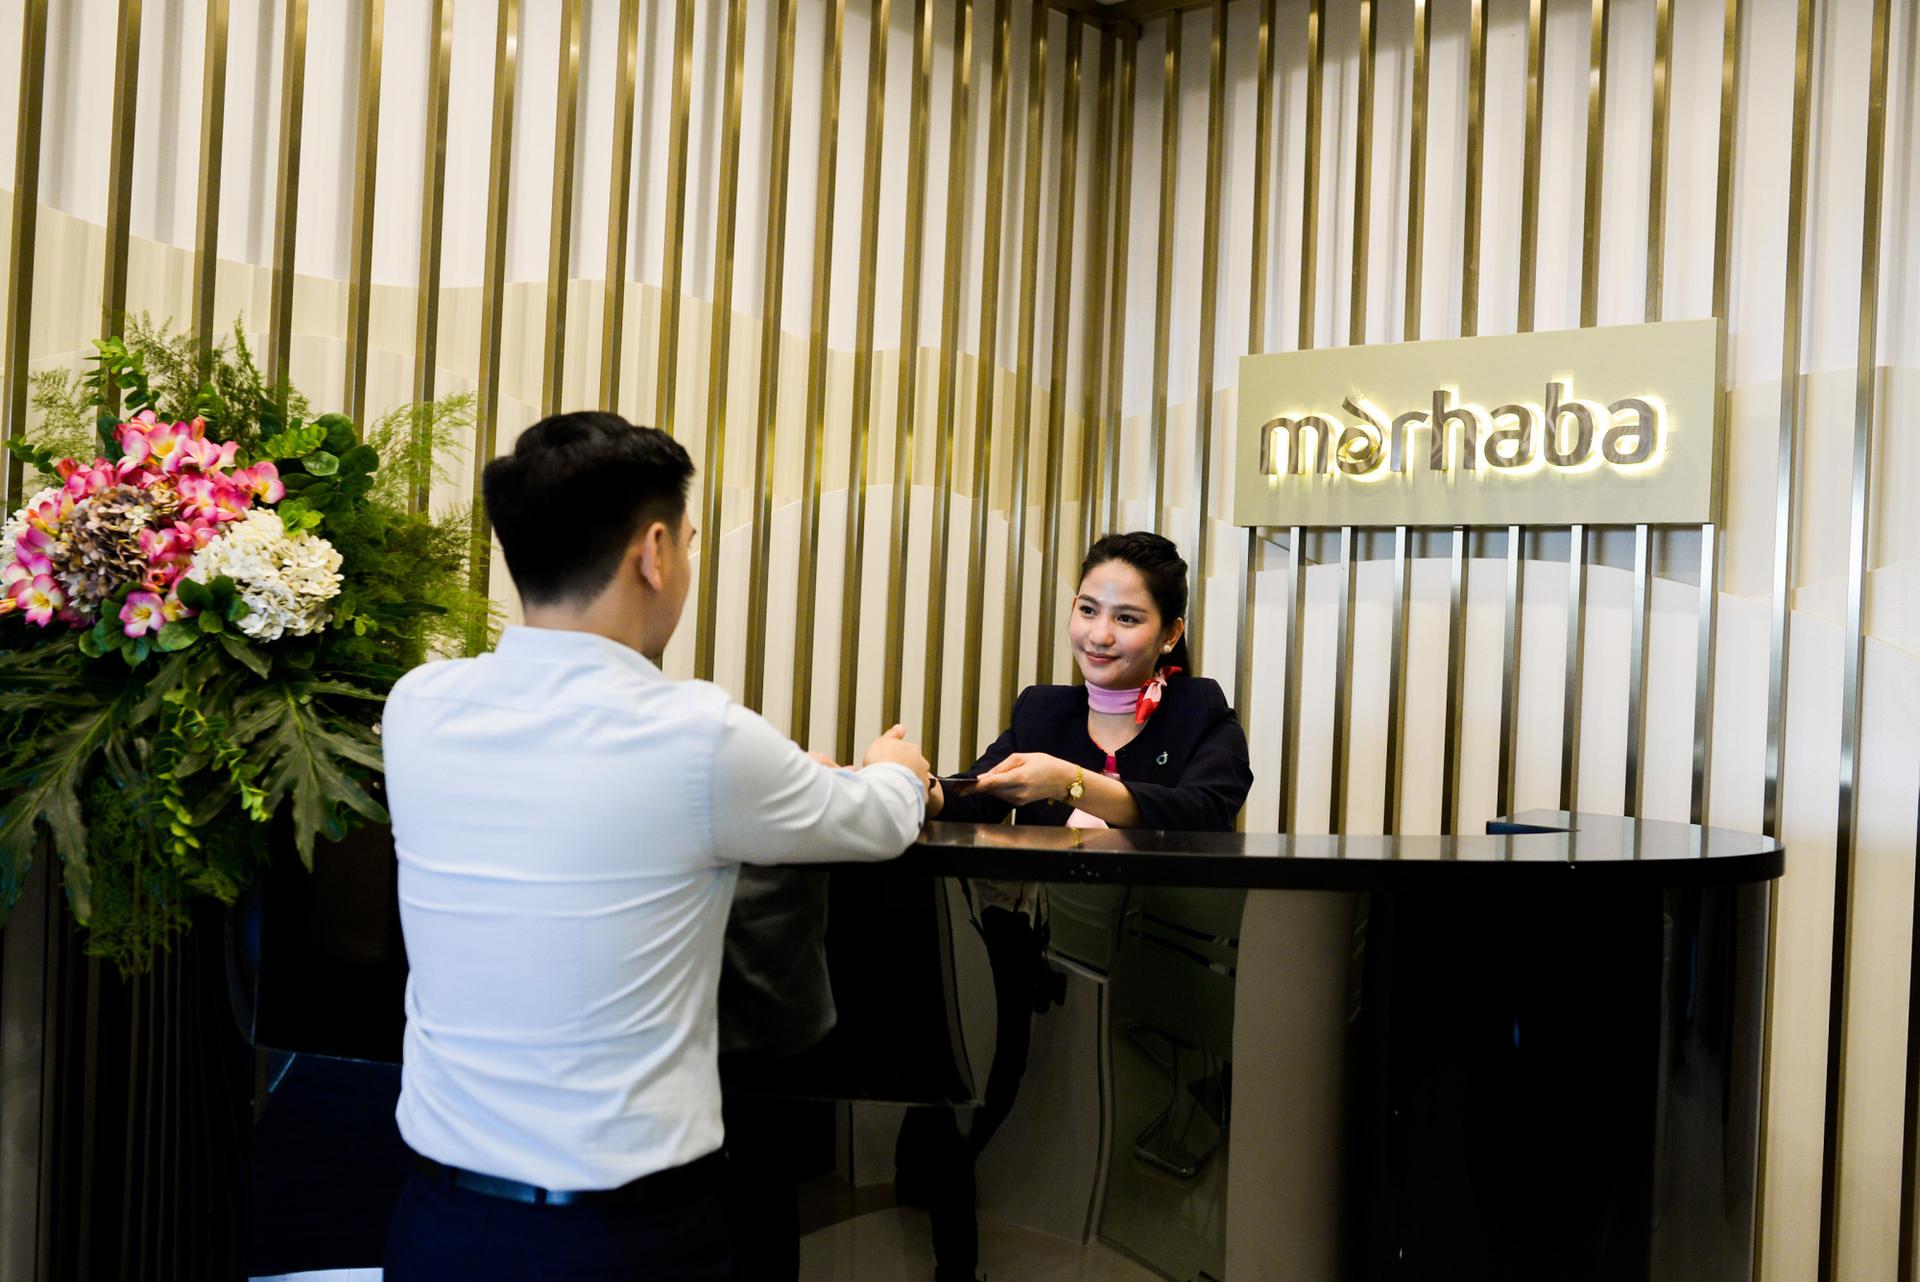 Marhaba Lounge image 4 of 4